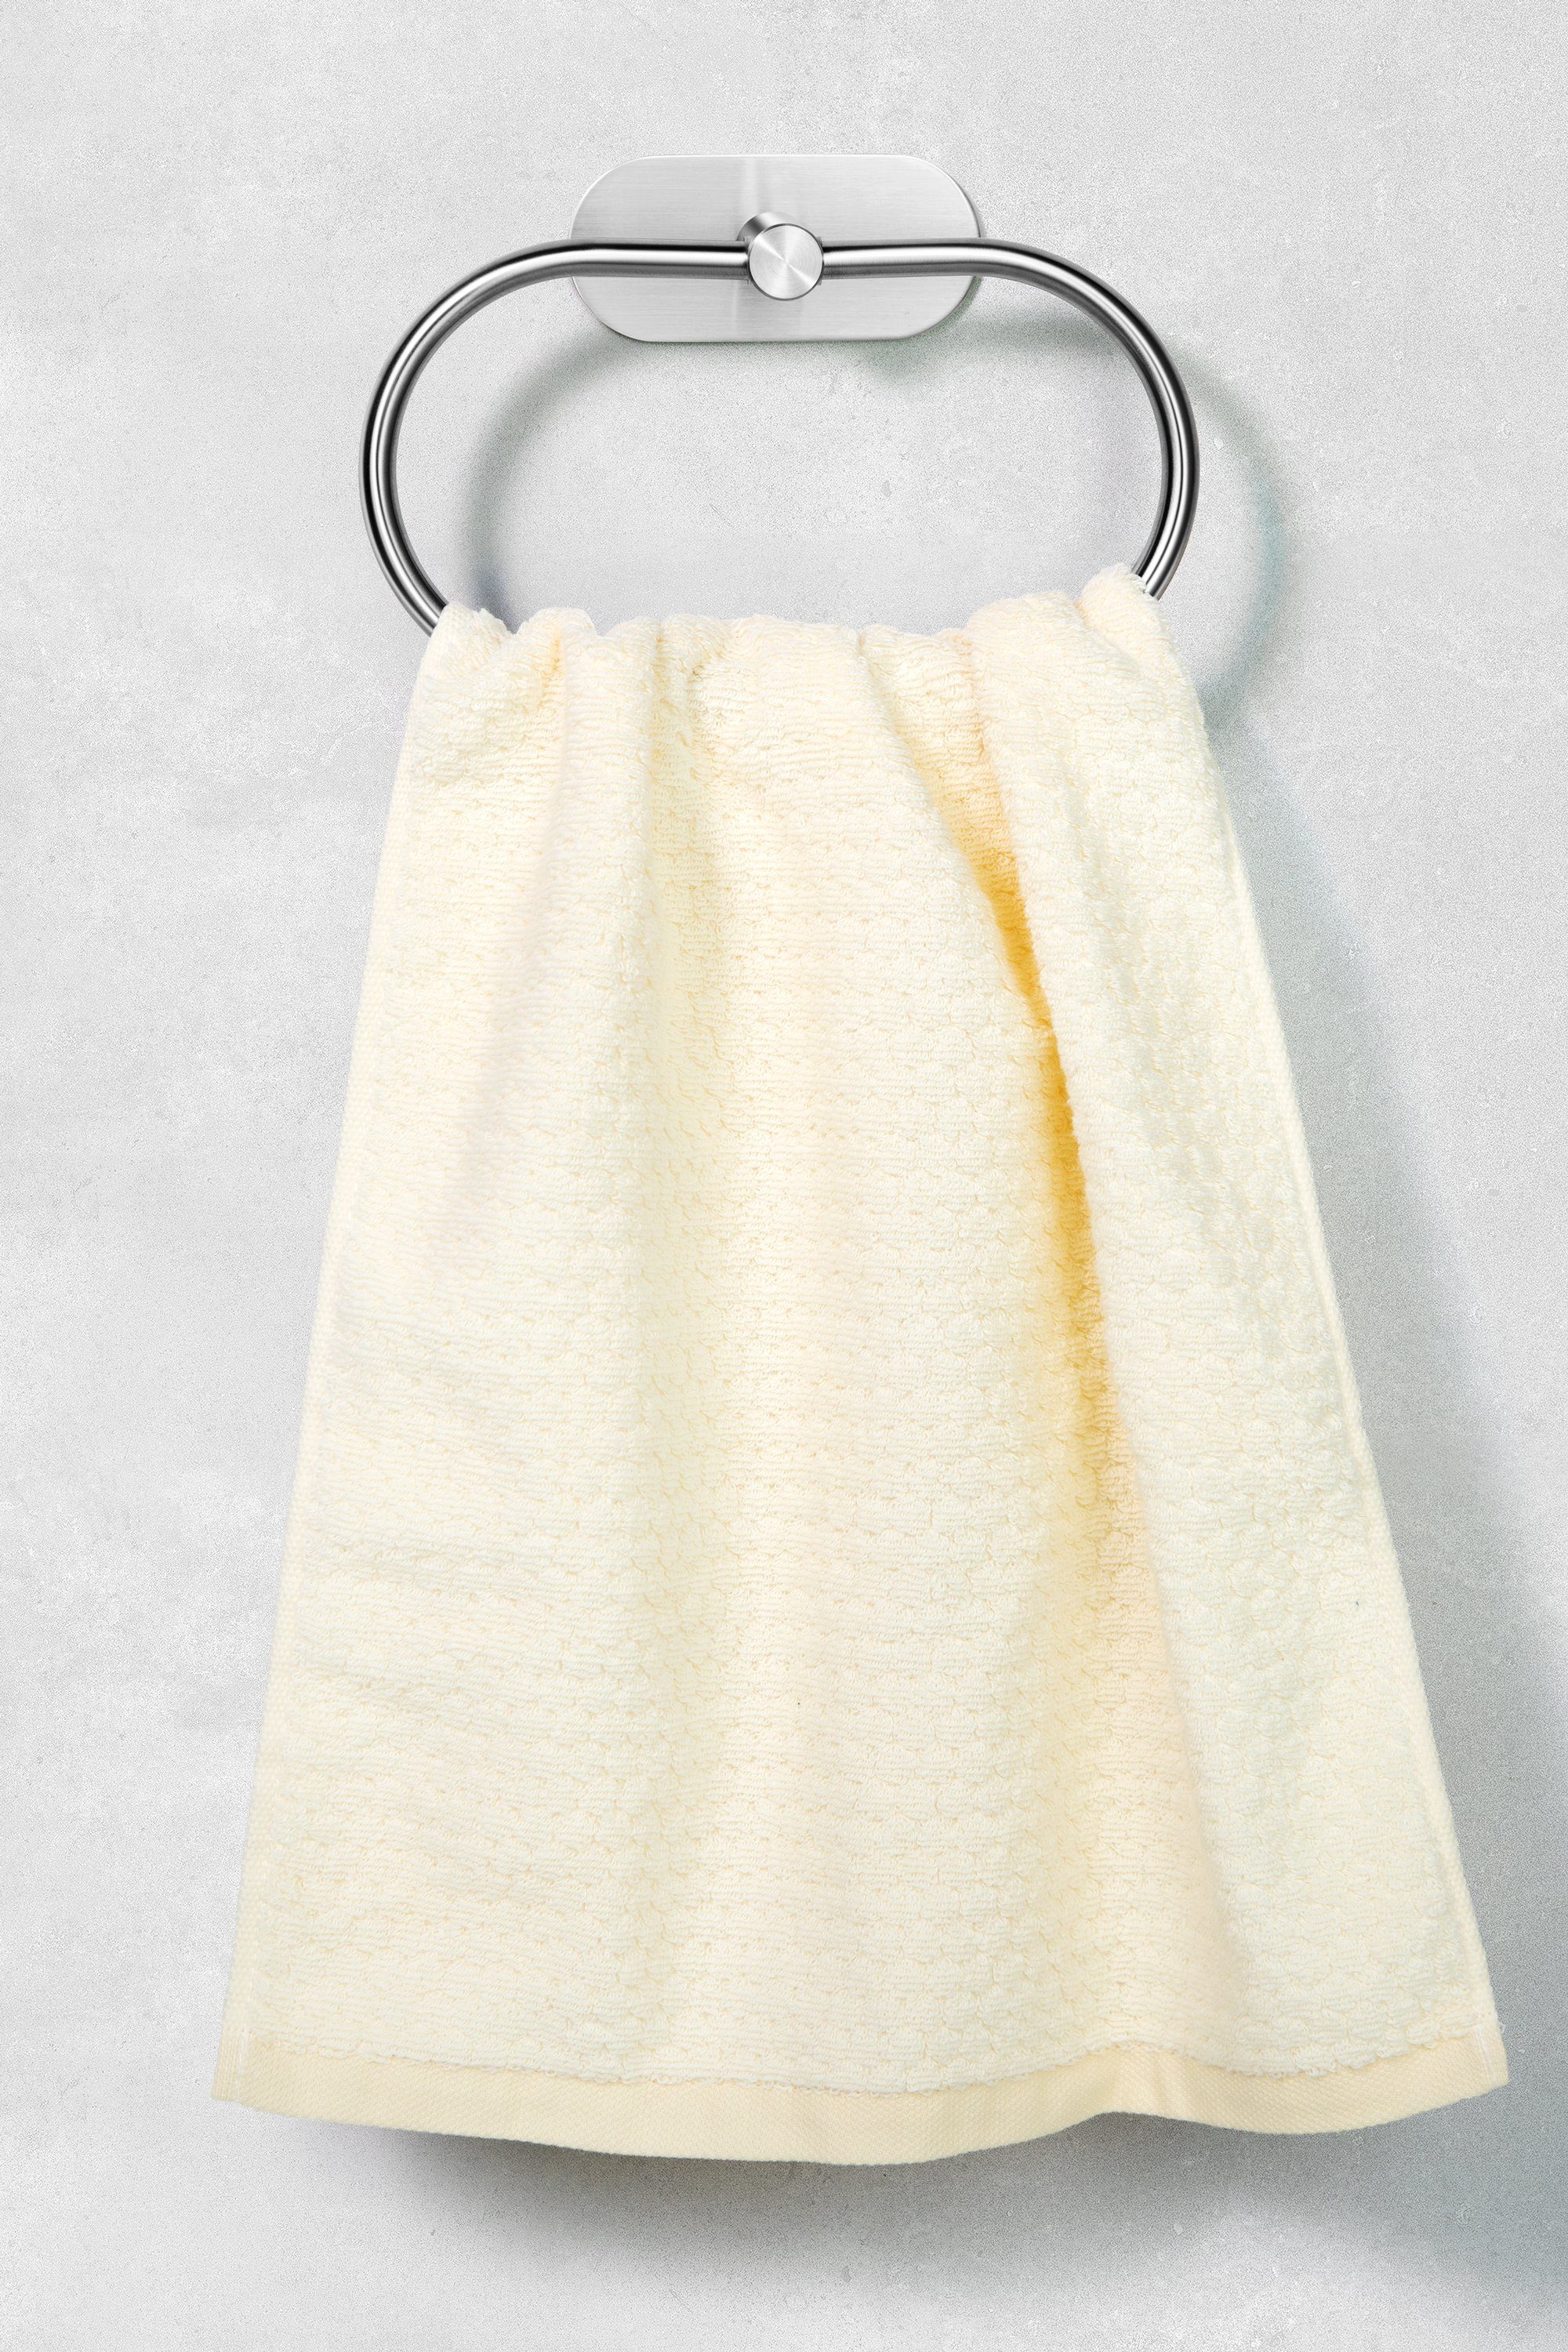 Ambrosya Edelstahl Bad Montage Handtuchhalter aus Silber Halter Handtuchhaken Handtuch Klebehaken WC Einfache Klebend Küche, Handtuchring Haken Selbstklebender